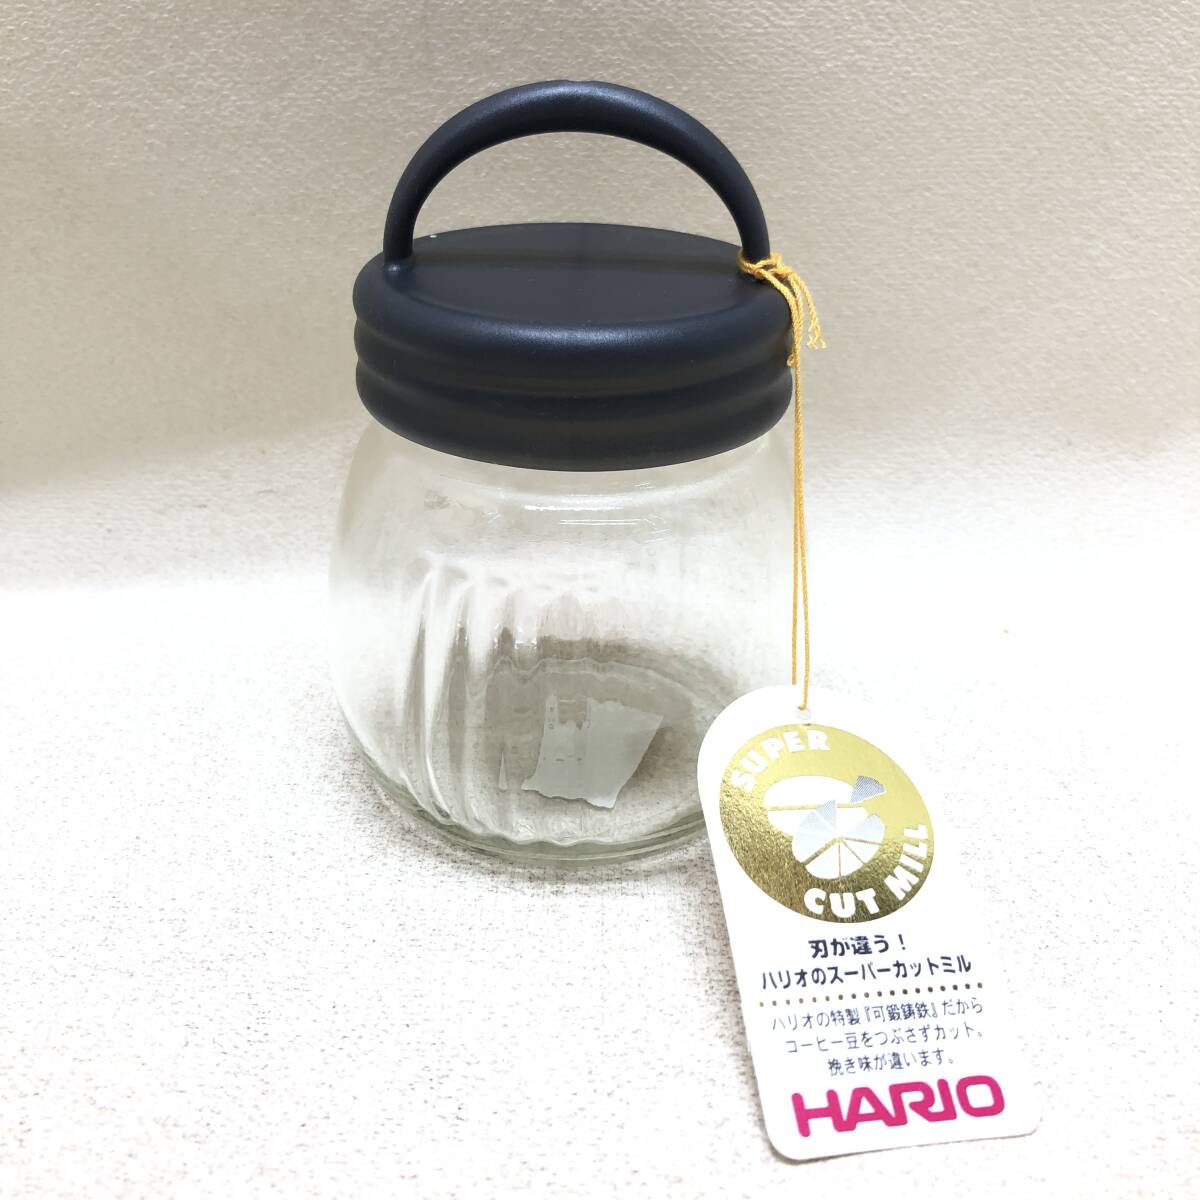 ★おそらく未使用 HARIO ハリオグラス コーヒーミル・スケルトン ICM COFFEE MILL コーヒー メーカー 趣味★C01838の画像2